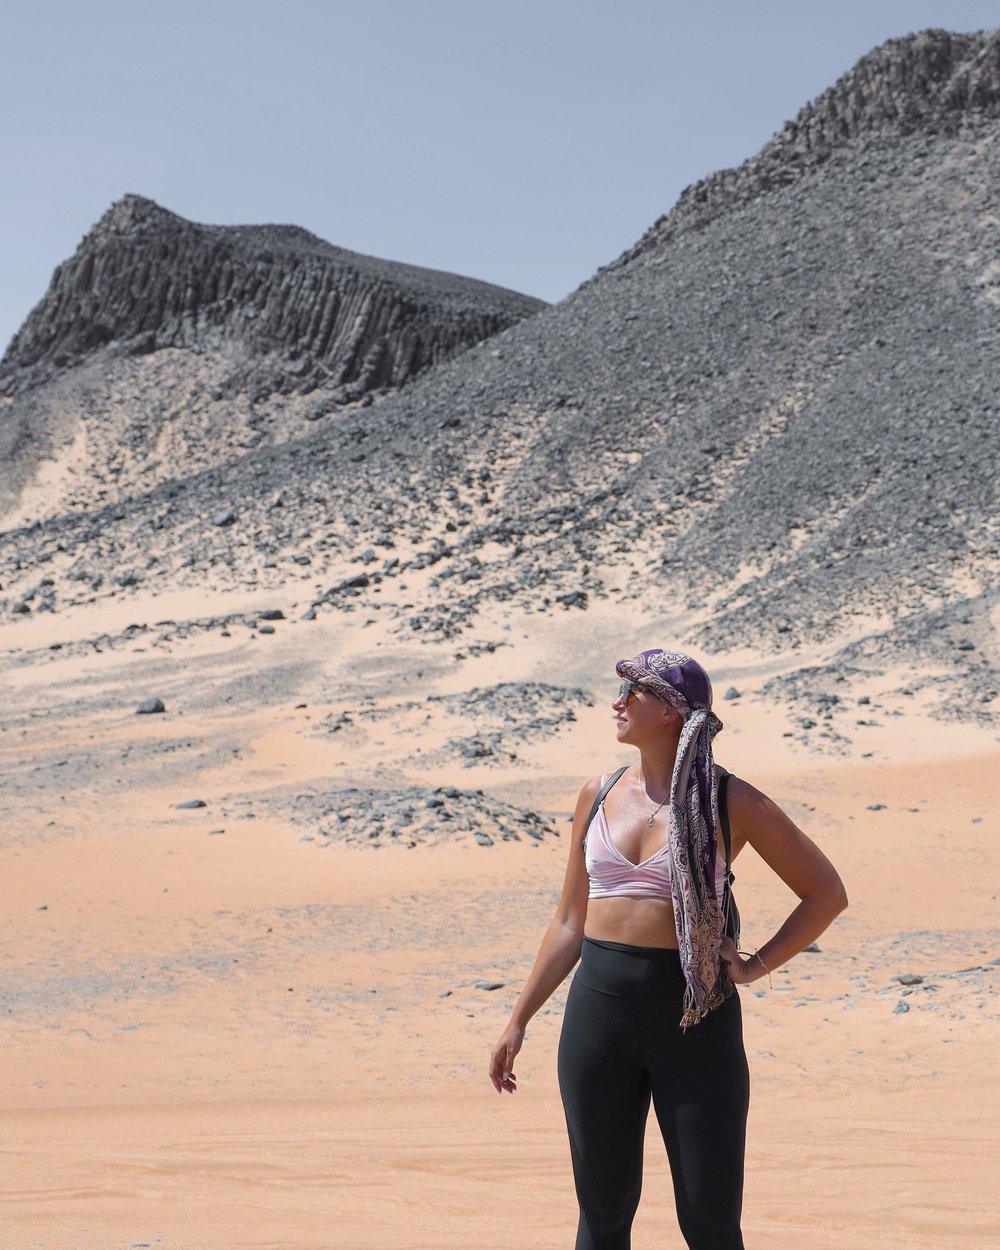 Posing in the Black Desert - Western Desert of Egypt